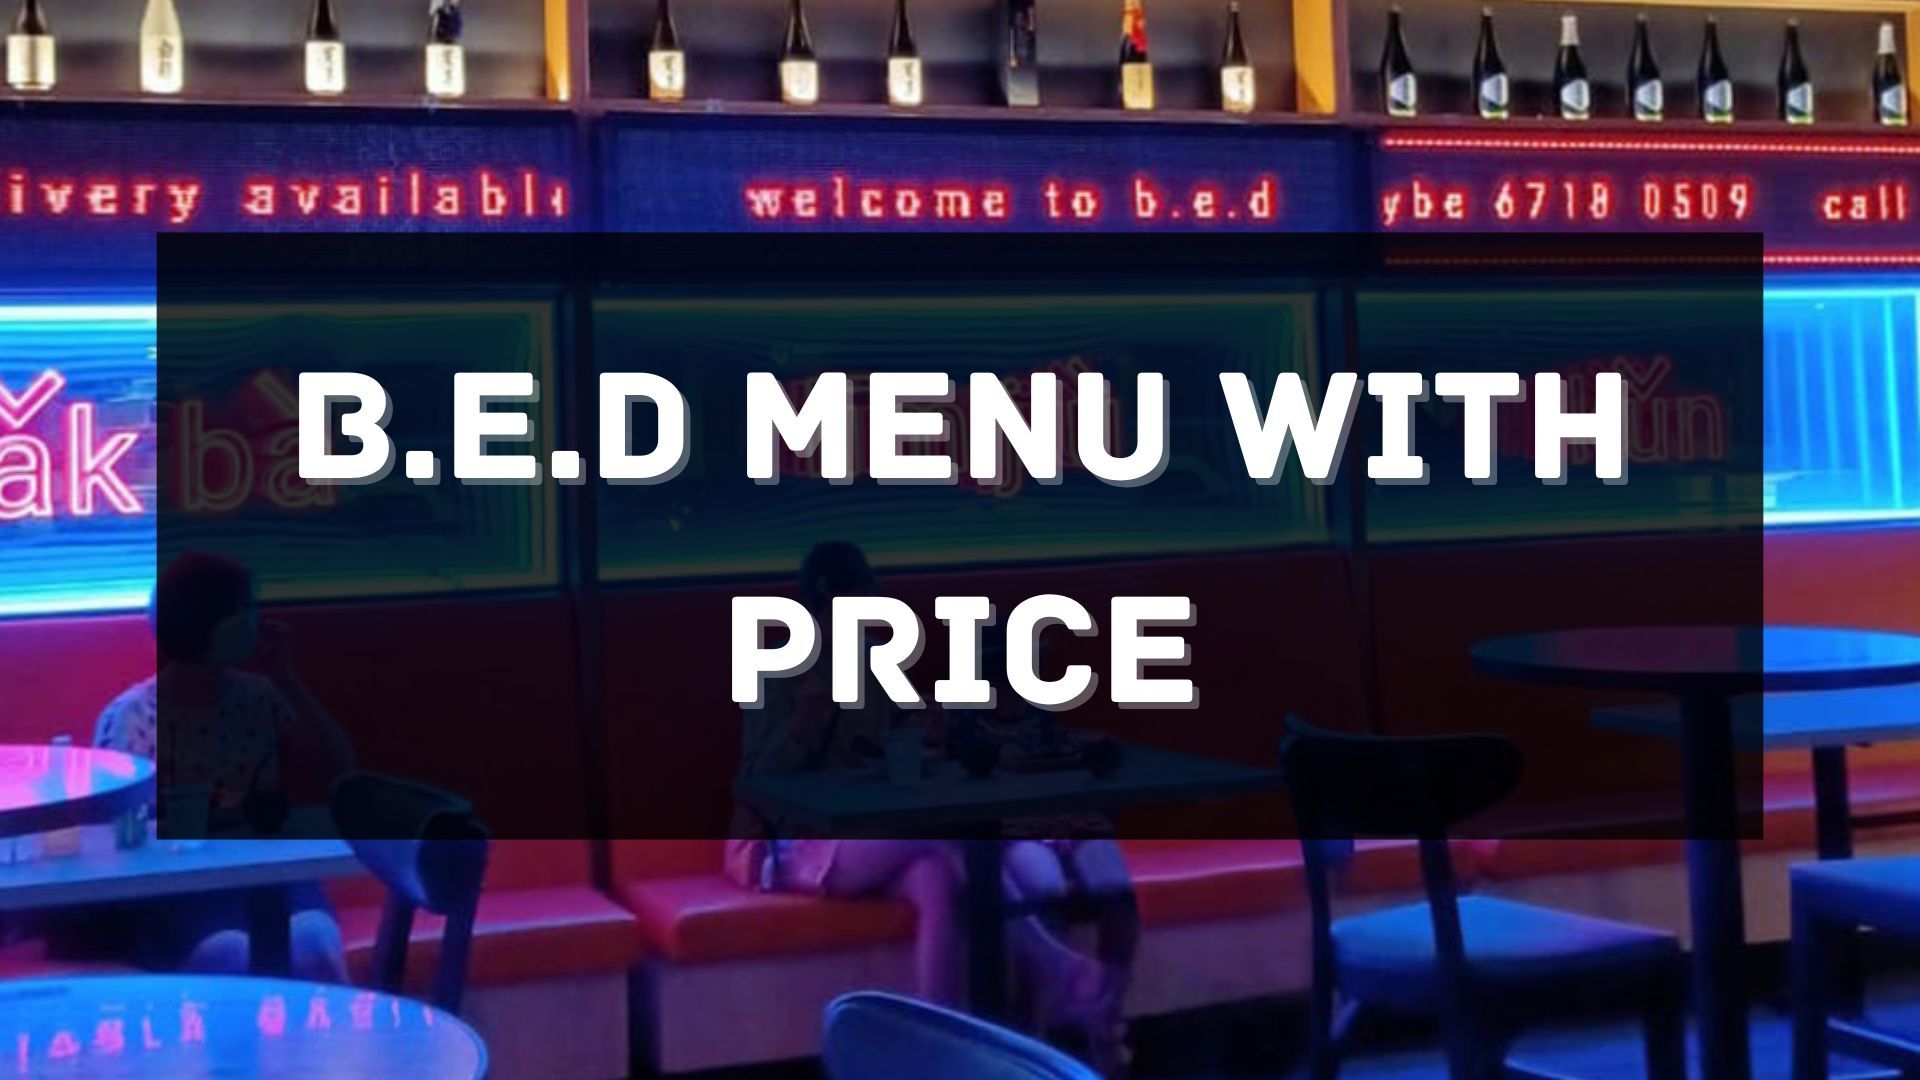 B.E.D menu prices singapore